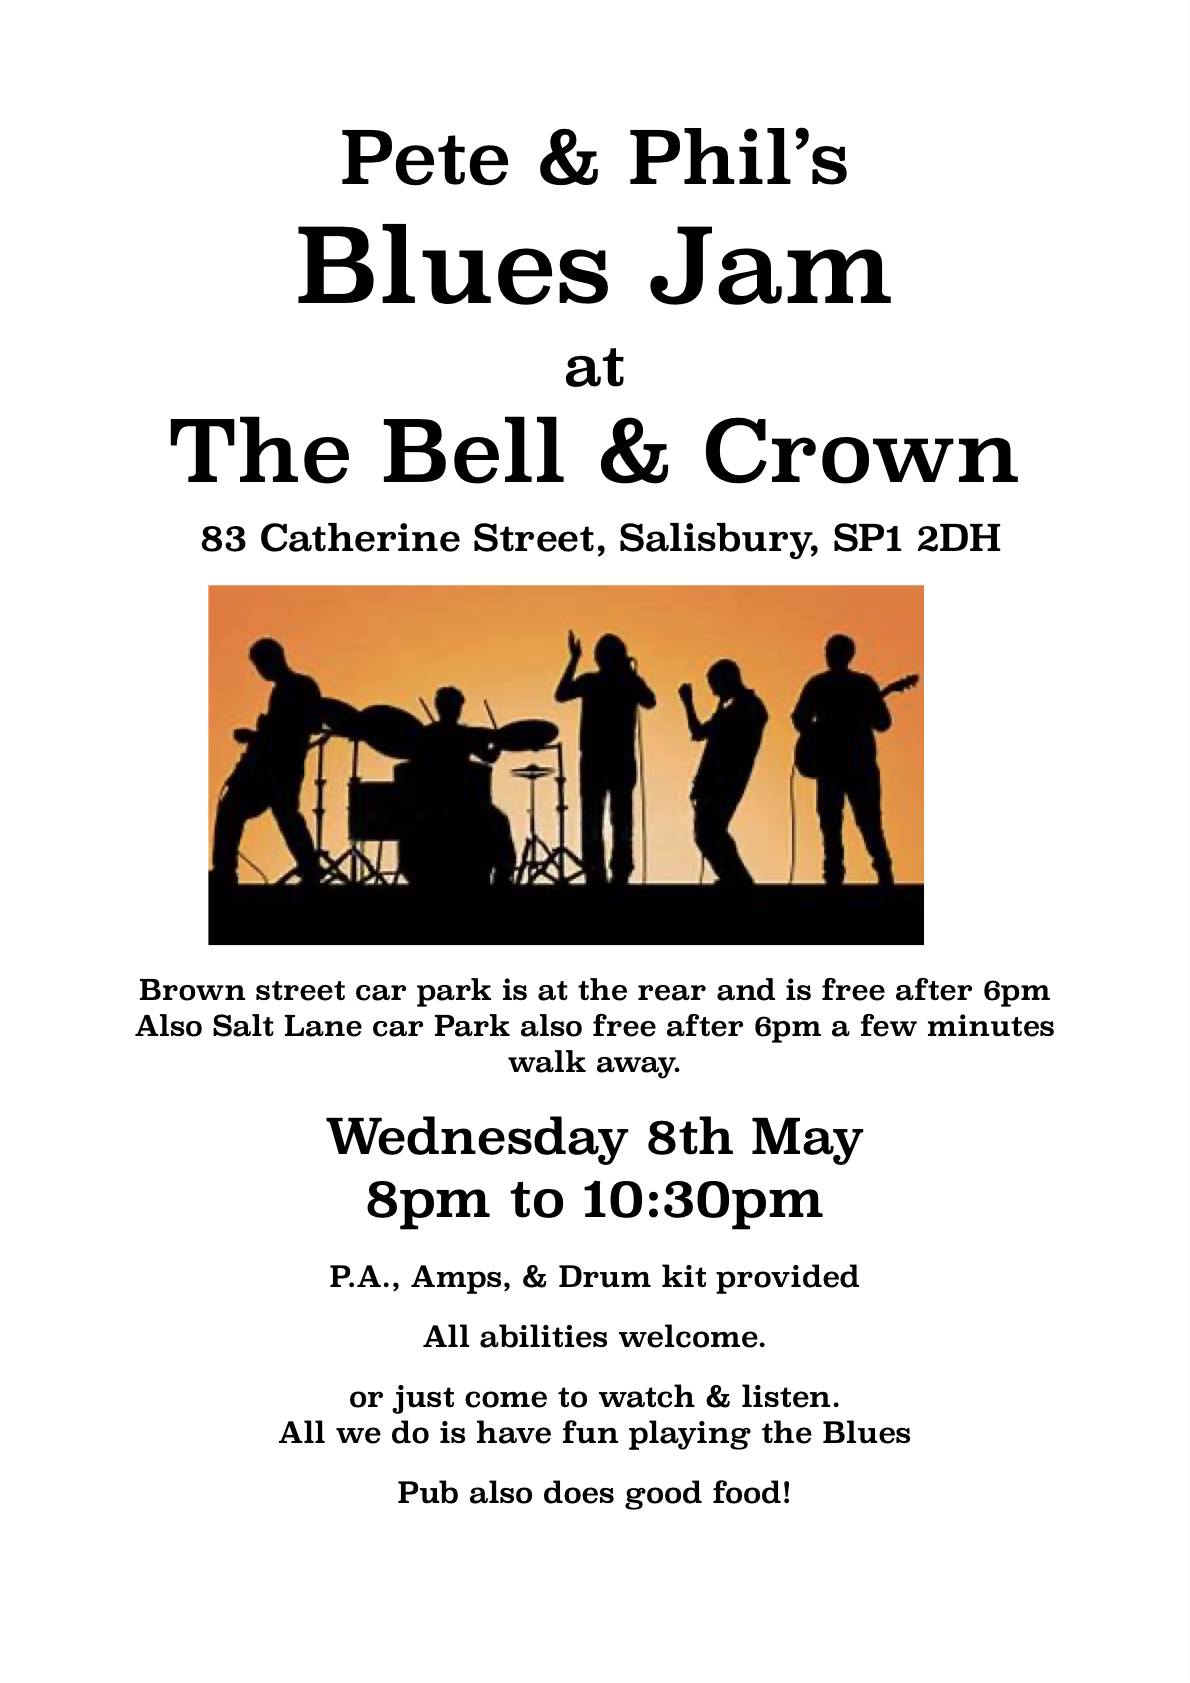 Pete & Phil's Blues Jam